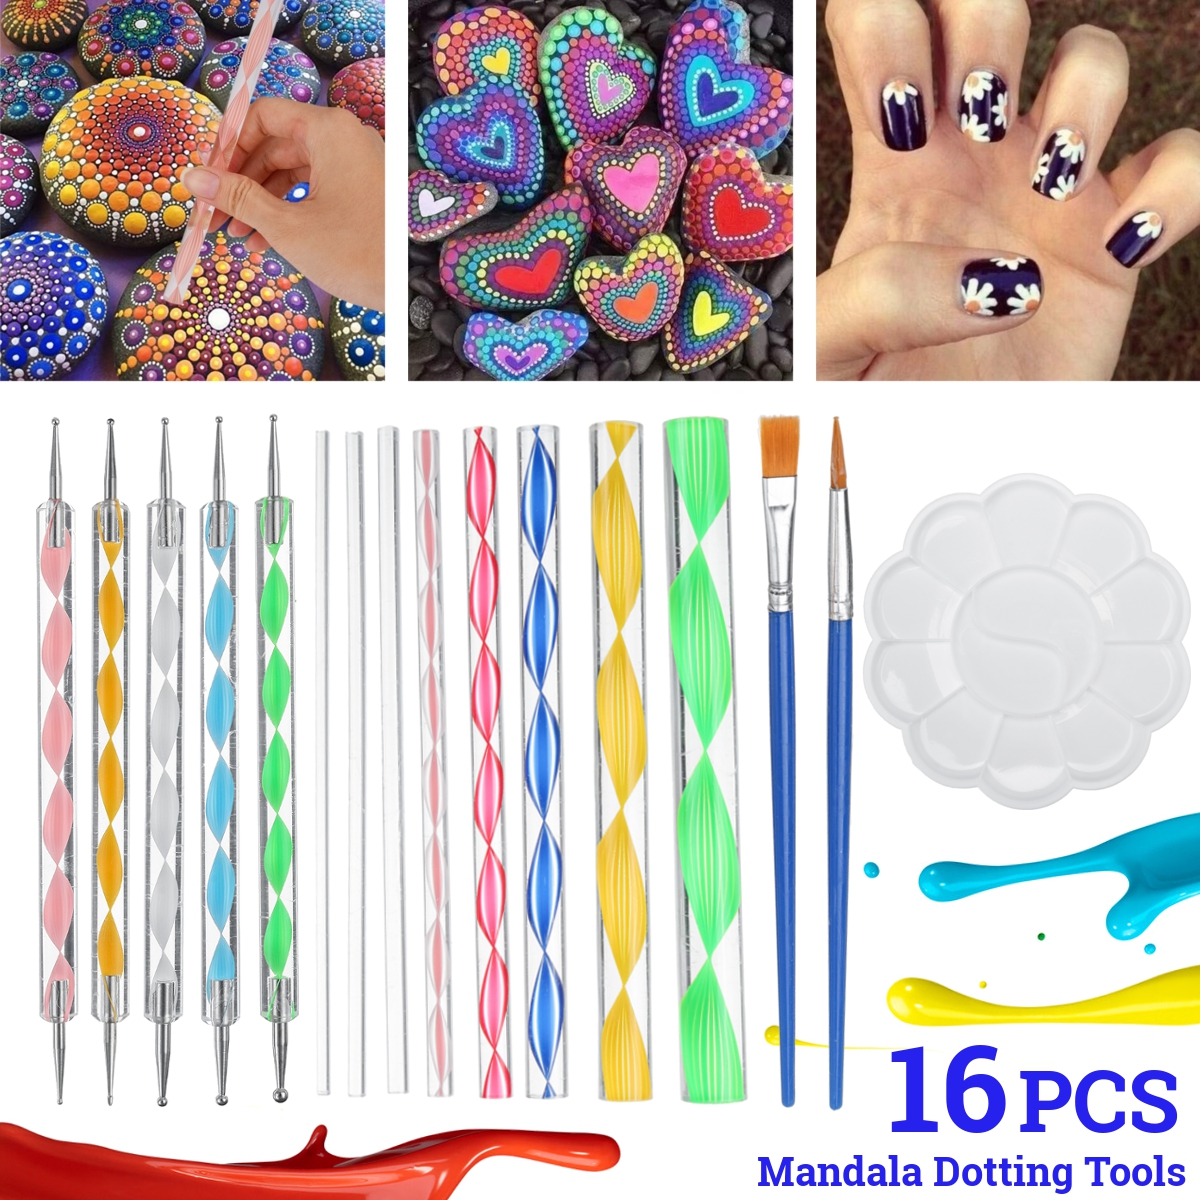 16Pcs-Mandala-Dotting-Tools-Set-Rock-Painting-Kit-Nail-Art-Pen-Paint-Stencil-1687383-1